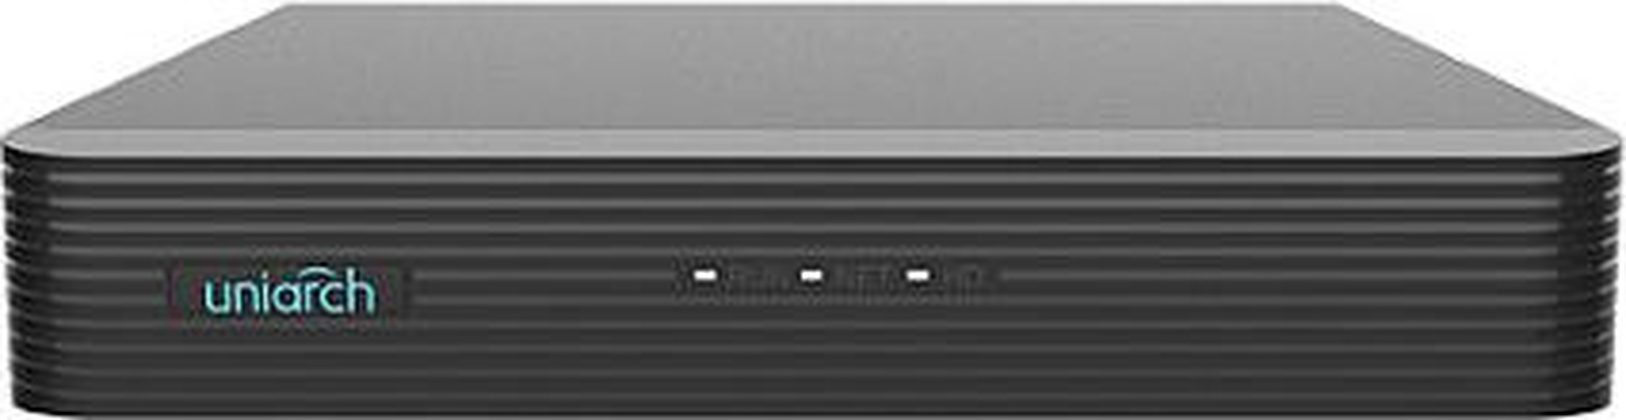 Видеорегистратор 4-канальный "Uniarch" [NVR-104E2], 2USB, RJ45,1xVGA, 1xHDMI